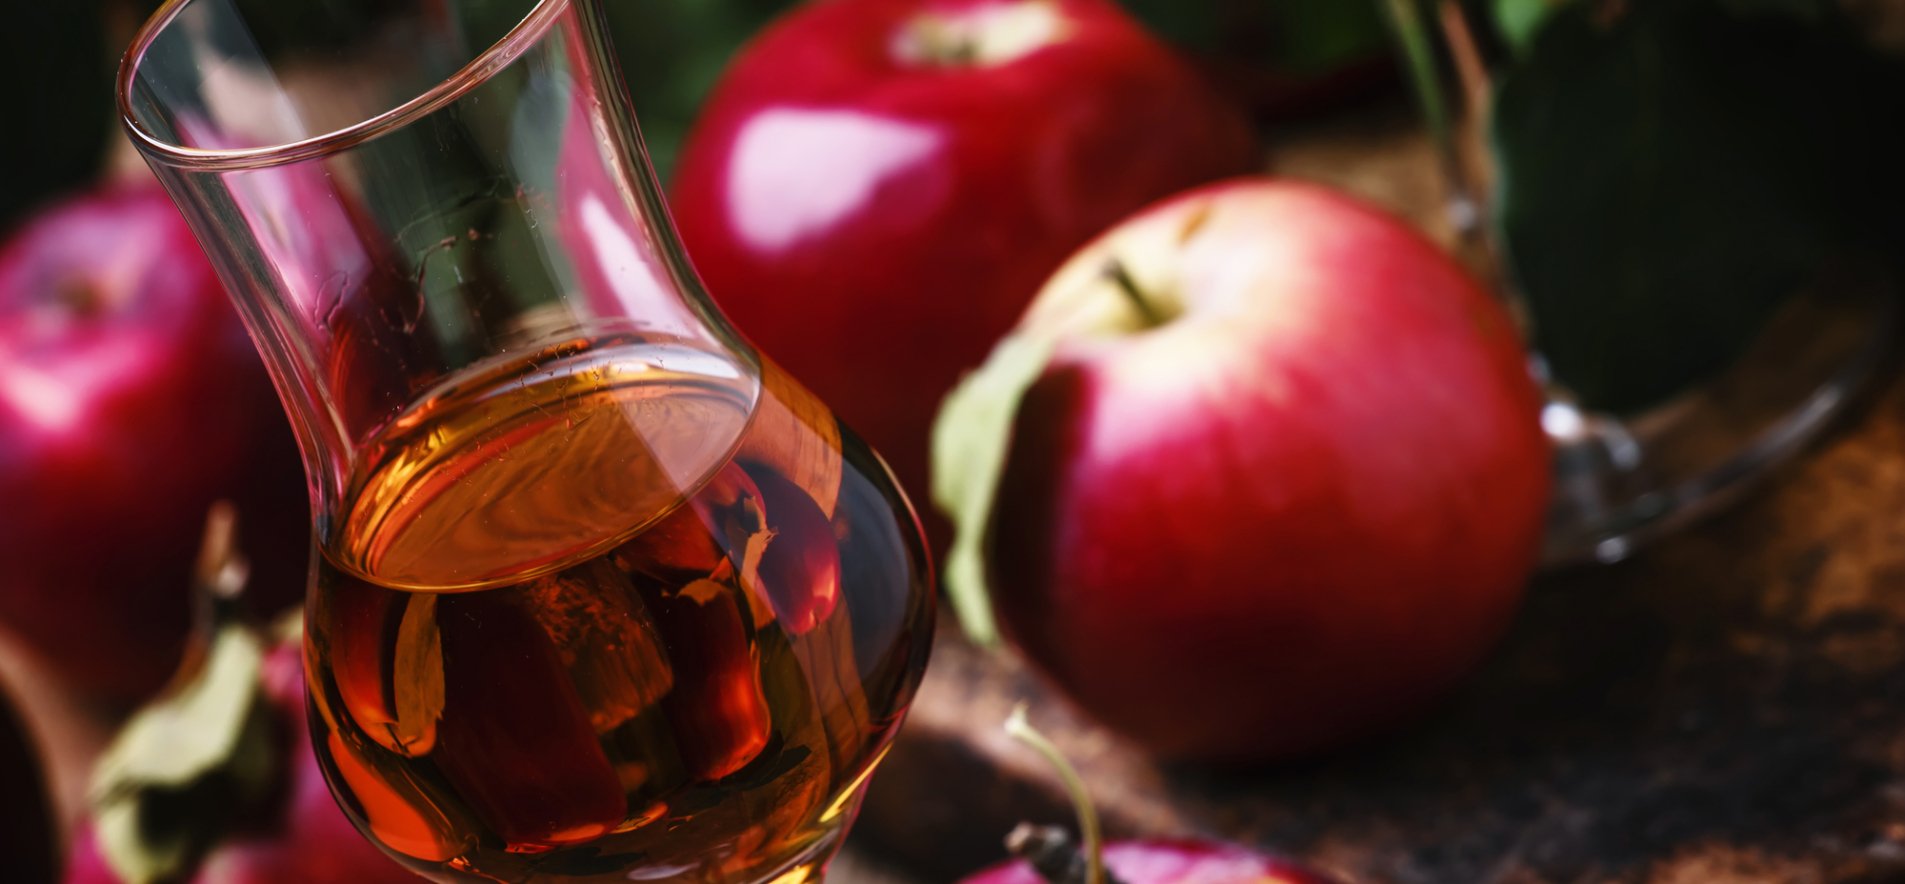 Домашнє яблучно-малинове вино